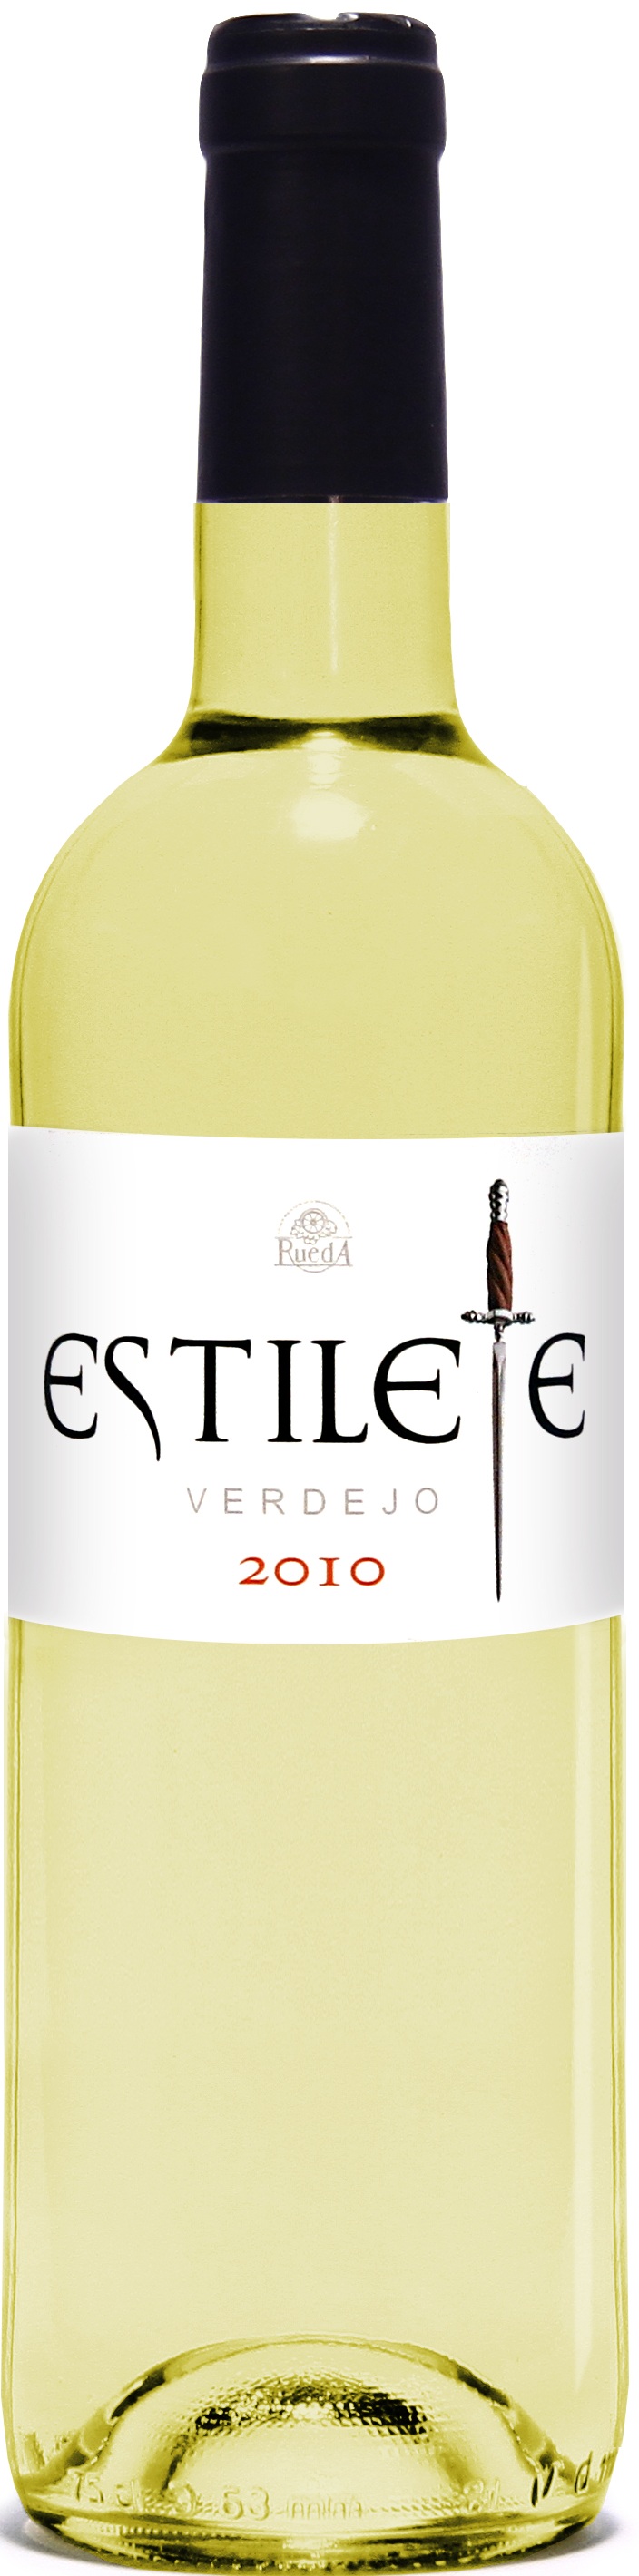 Image of Wine bottle Estilete Verdejo